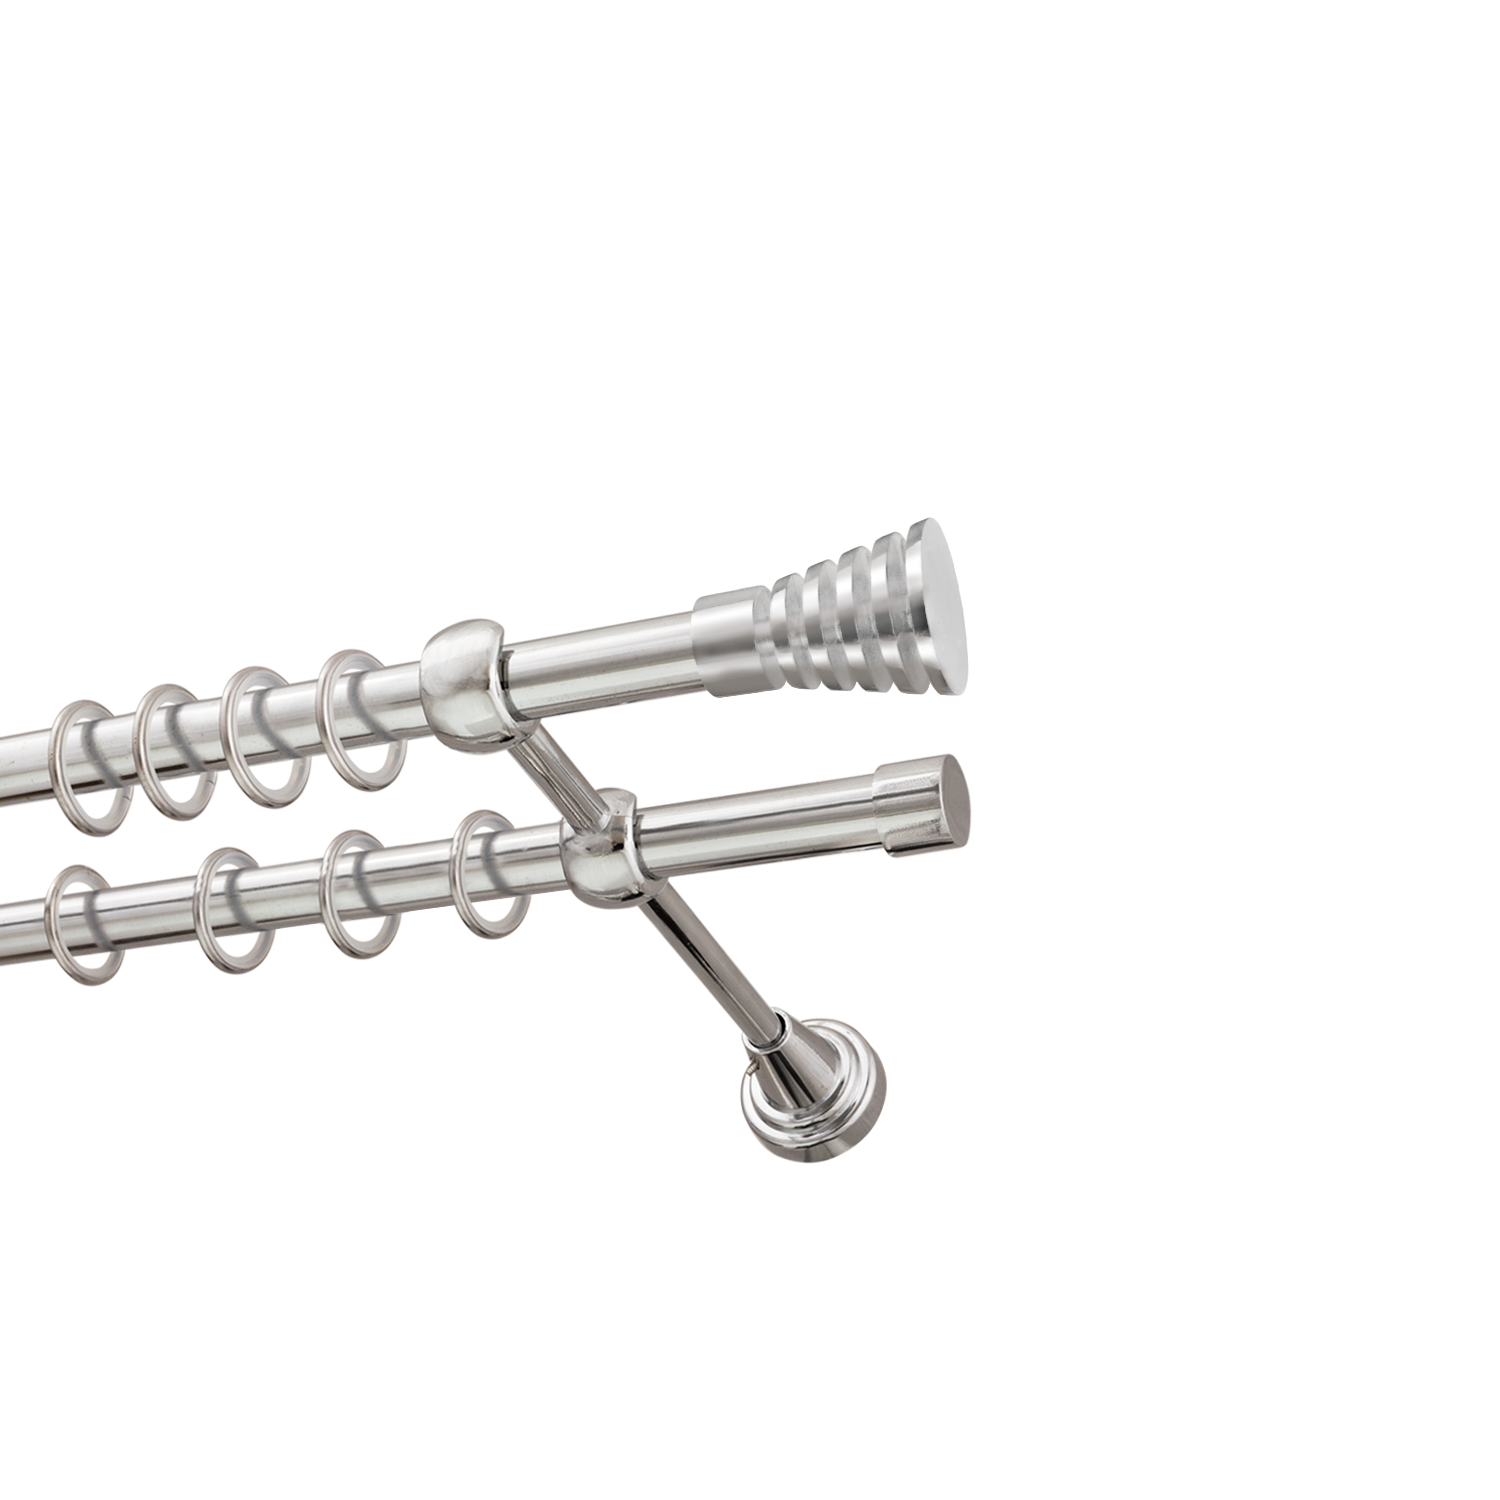 Металлический карниз для штор Верона, двухрядный 16/16 мм, серебро, гладкая штанга, длина 300 см